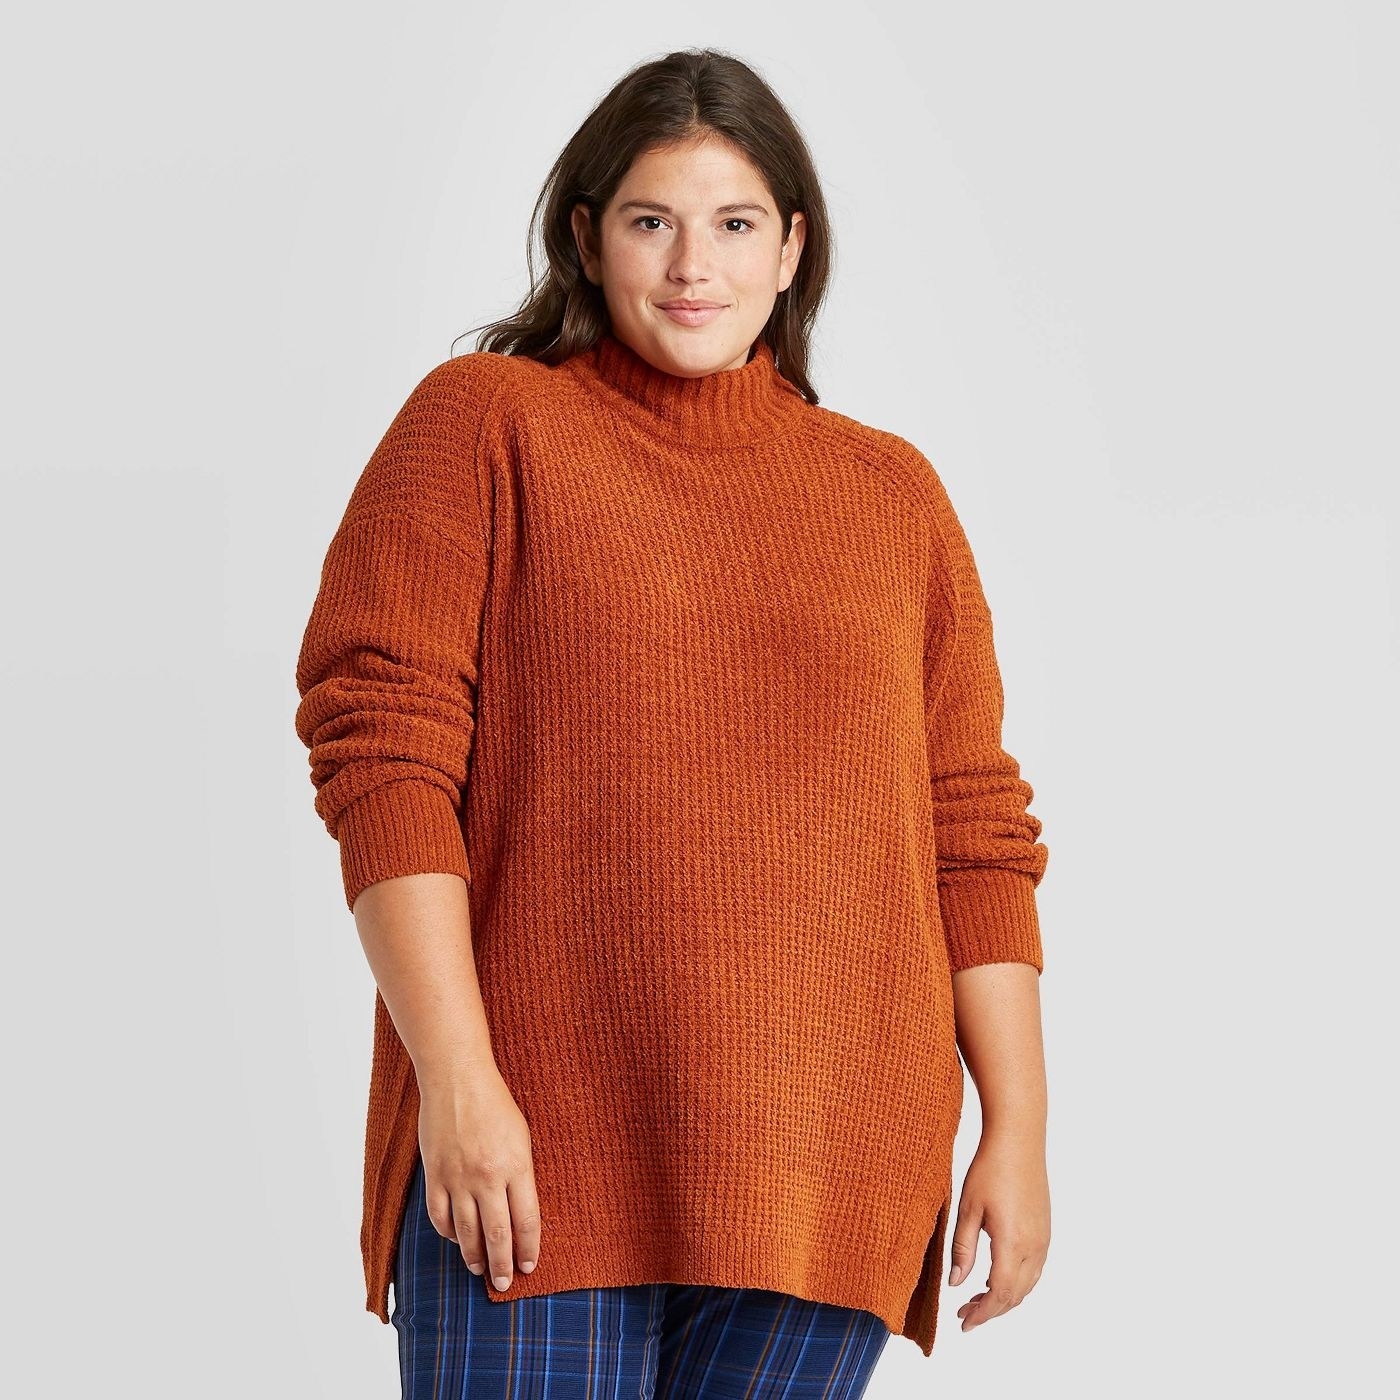 Model wearing orange sweater